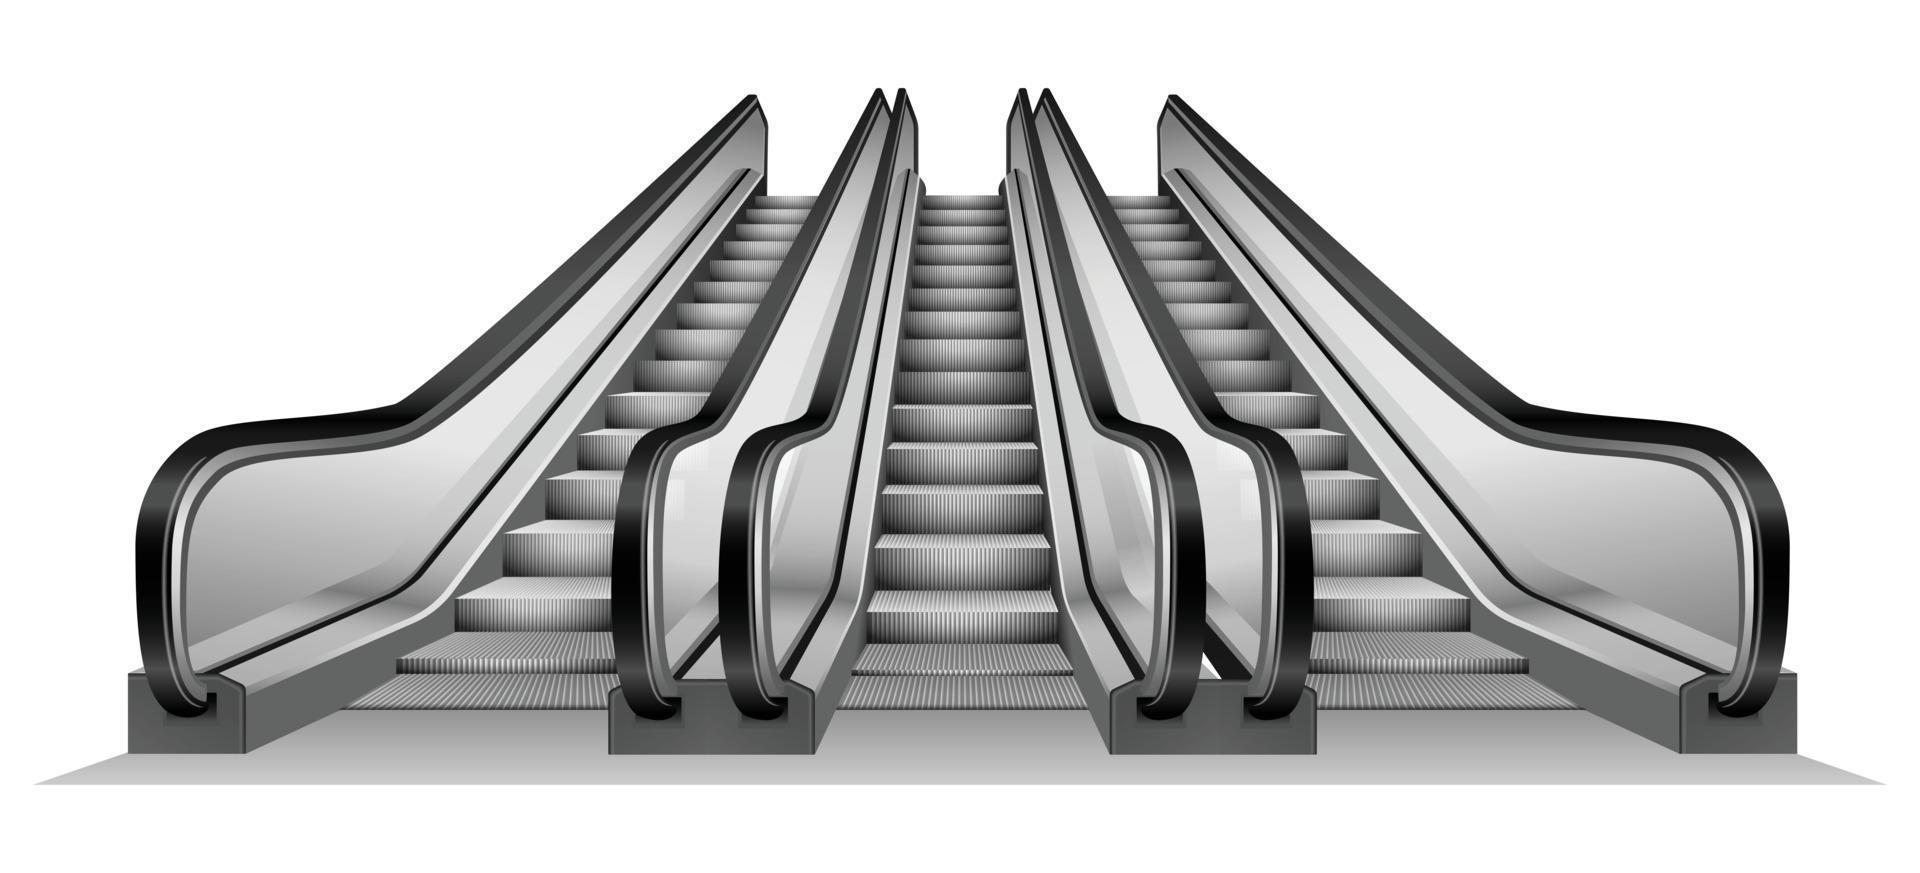 grupo de escaleras mecánicas en maqueta de metro, estilo realista vector